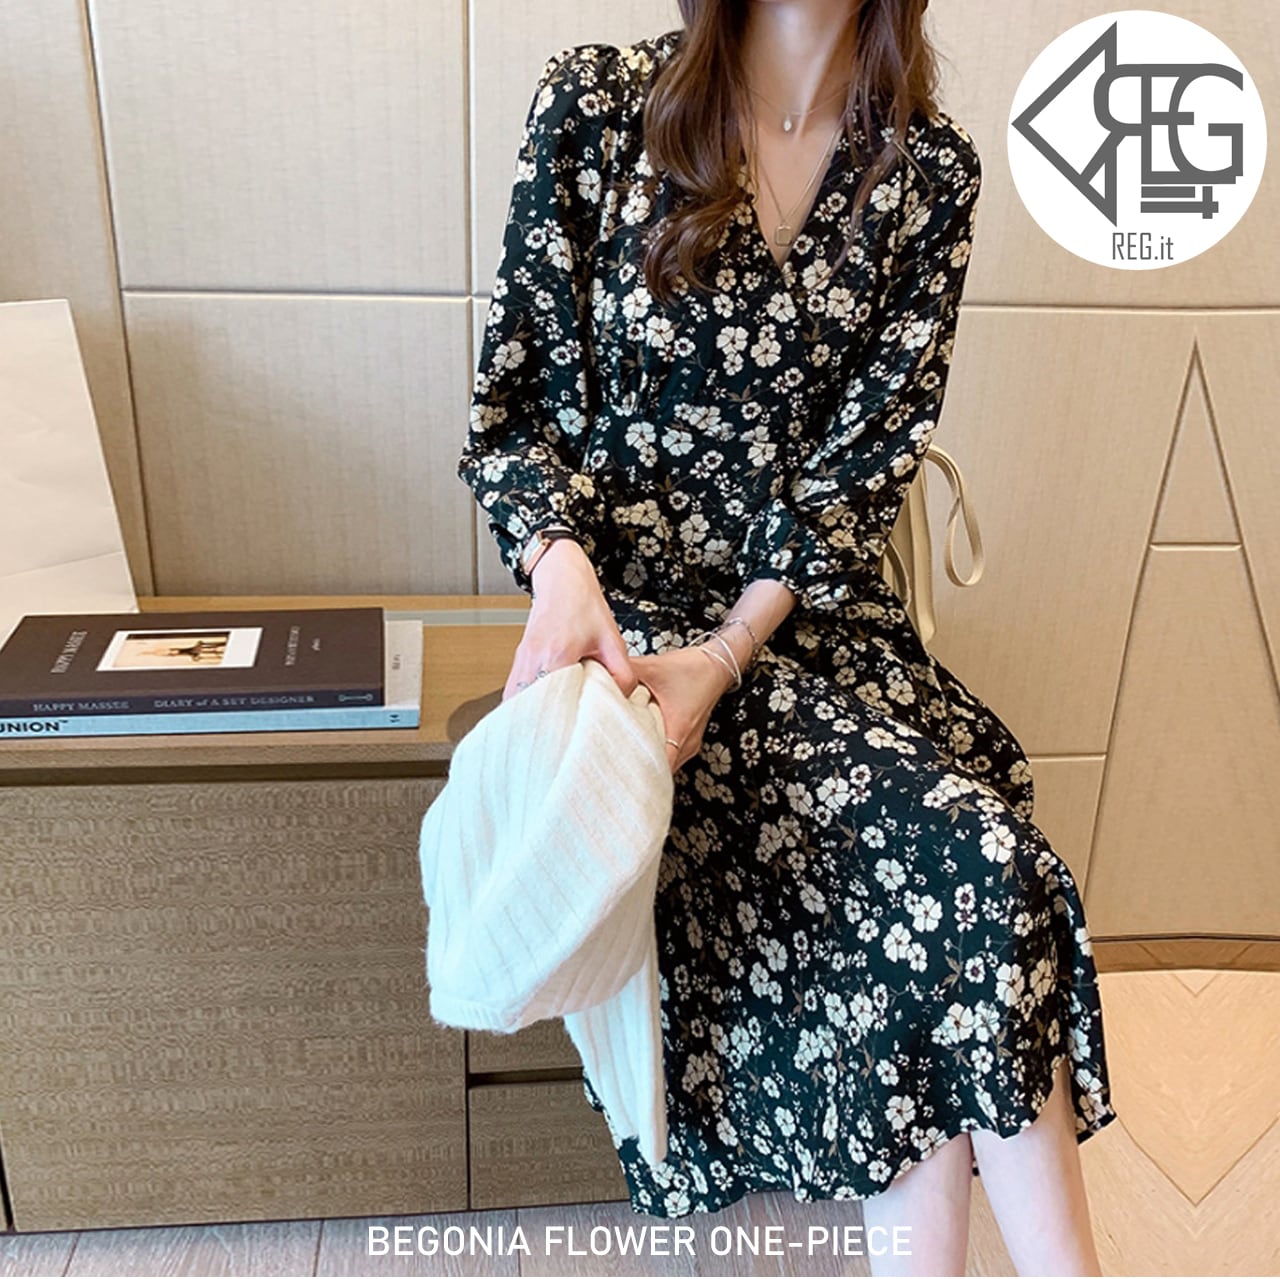 REGIT】【即納】BEGONIA ONE-PIECE 韓国ファッション 20代30代